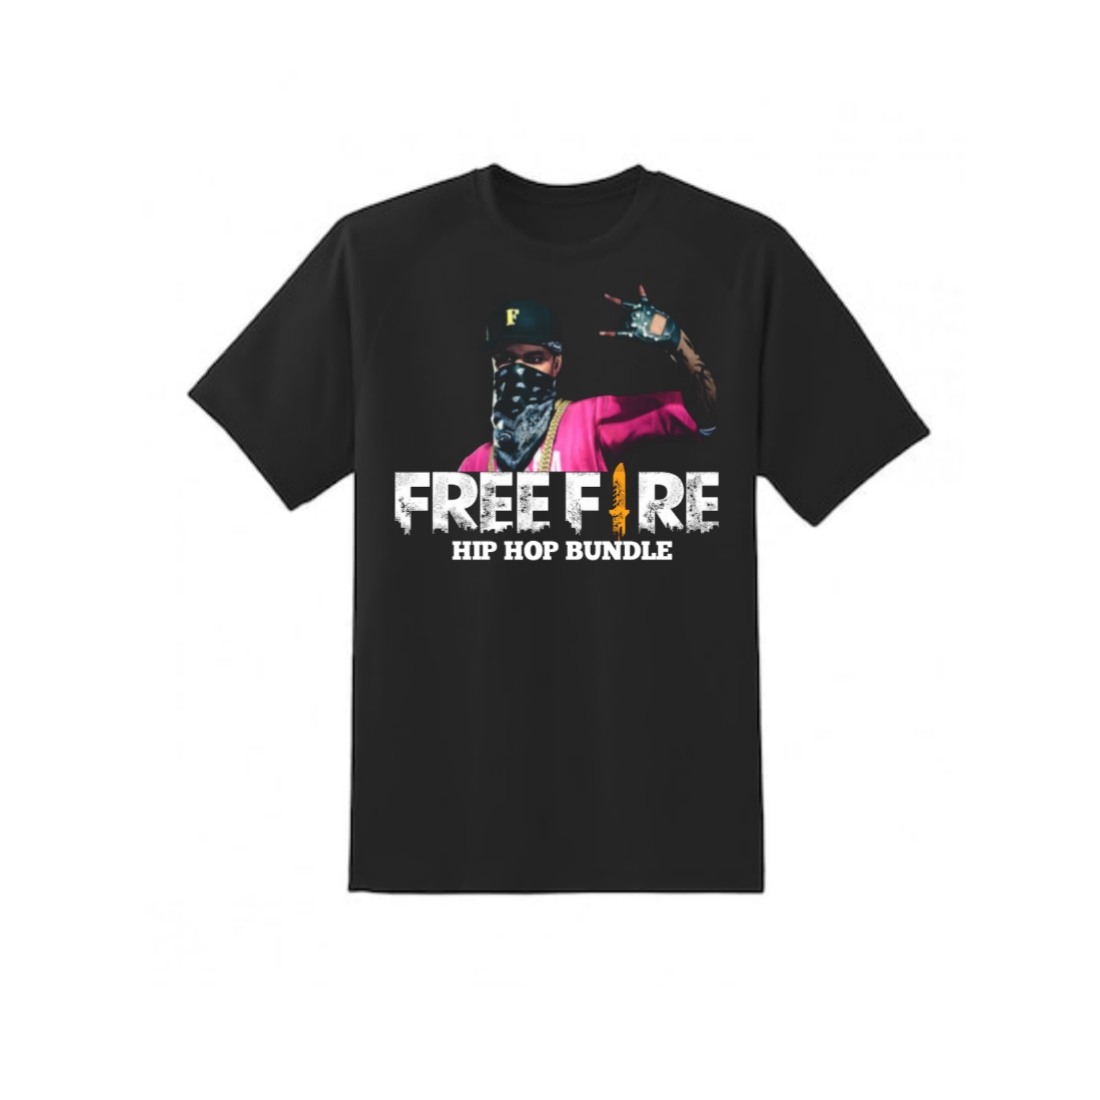 Free fire hip hop bundle T-shirt design cover image.